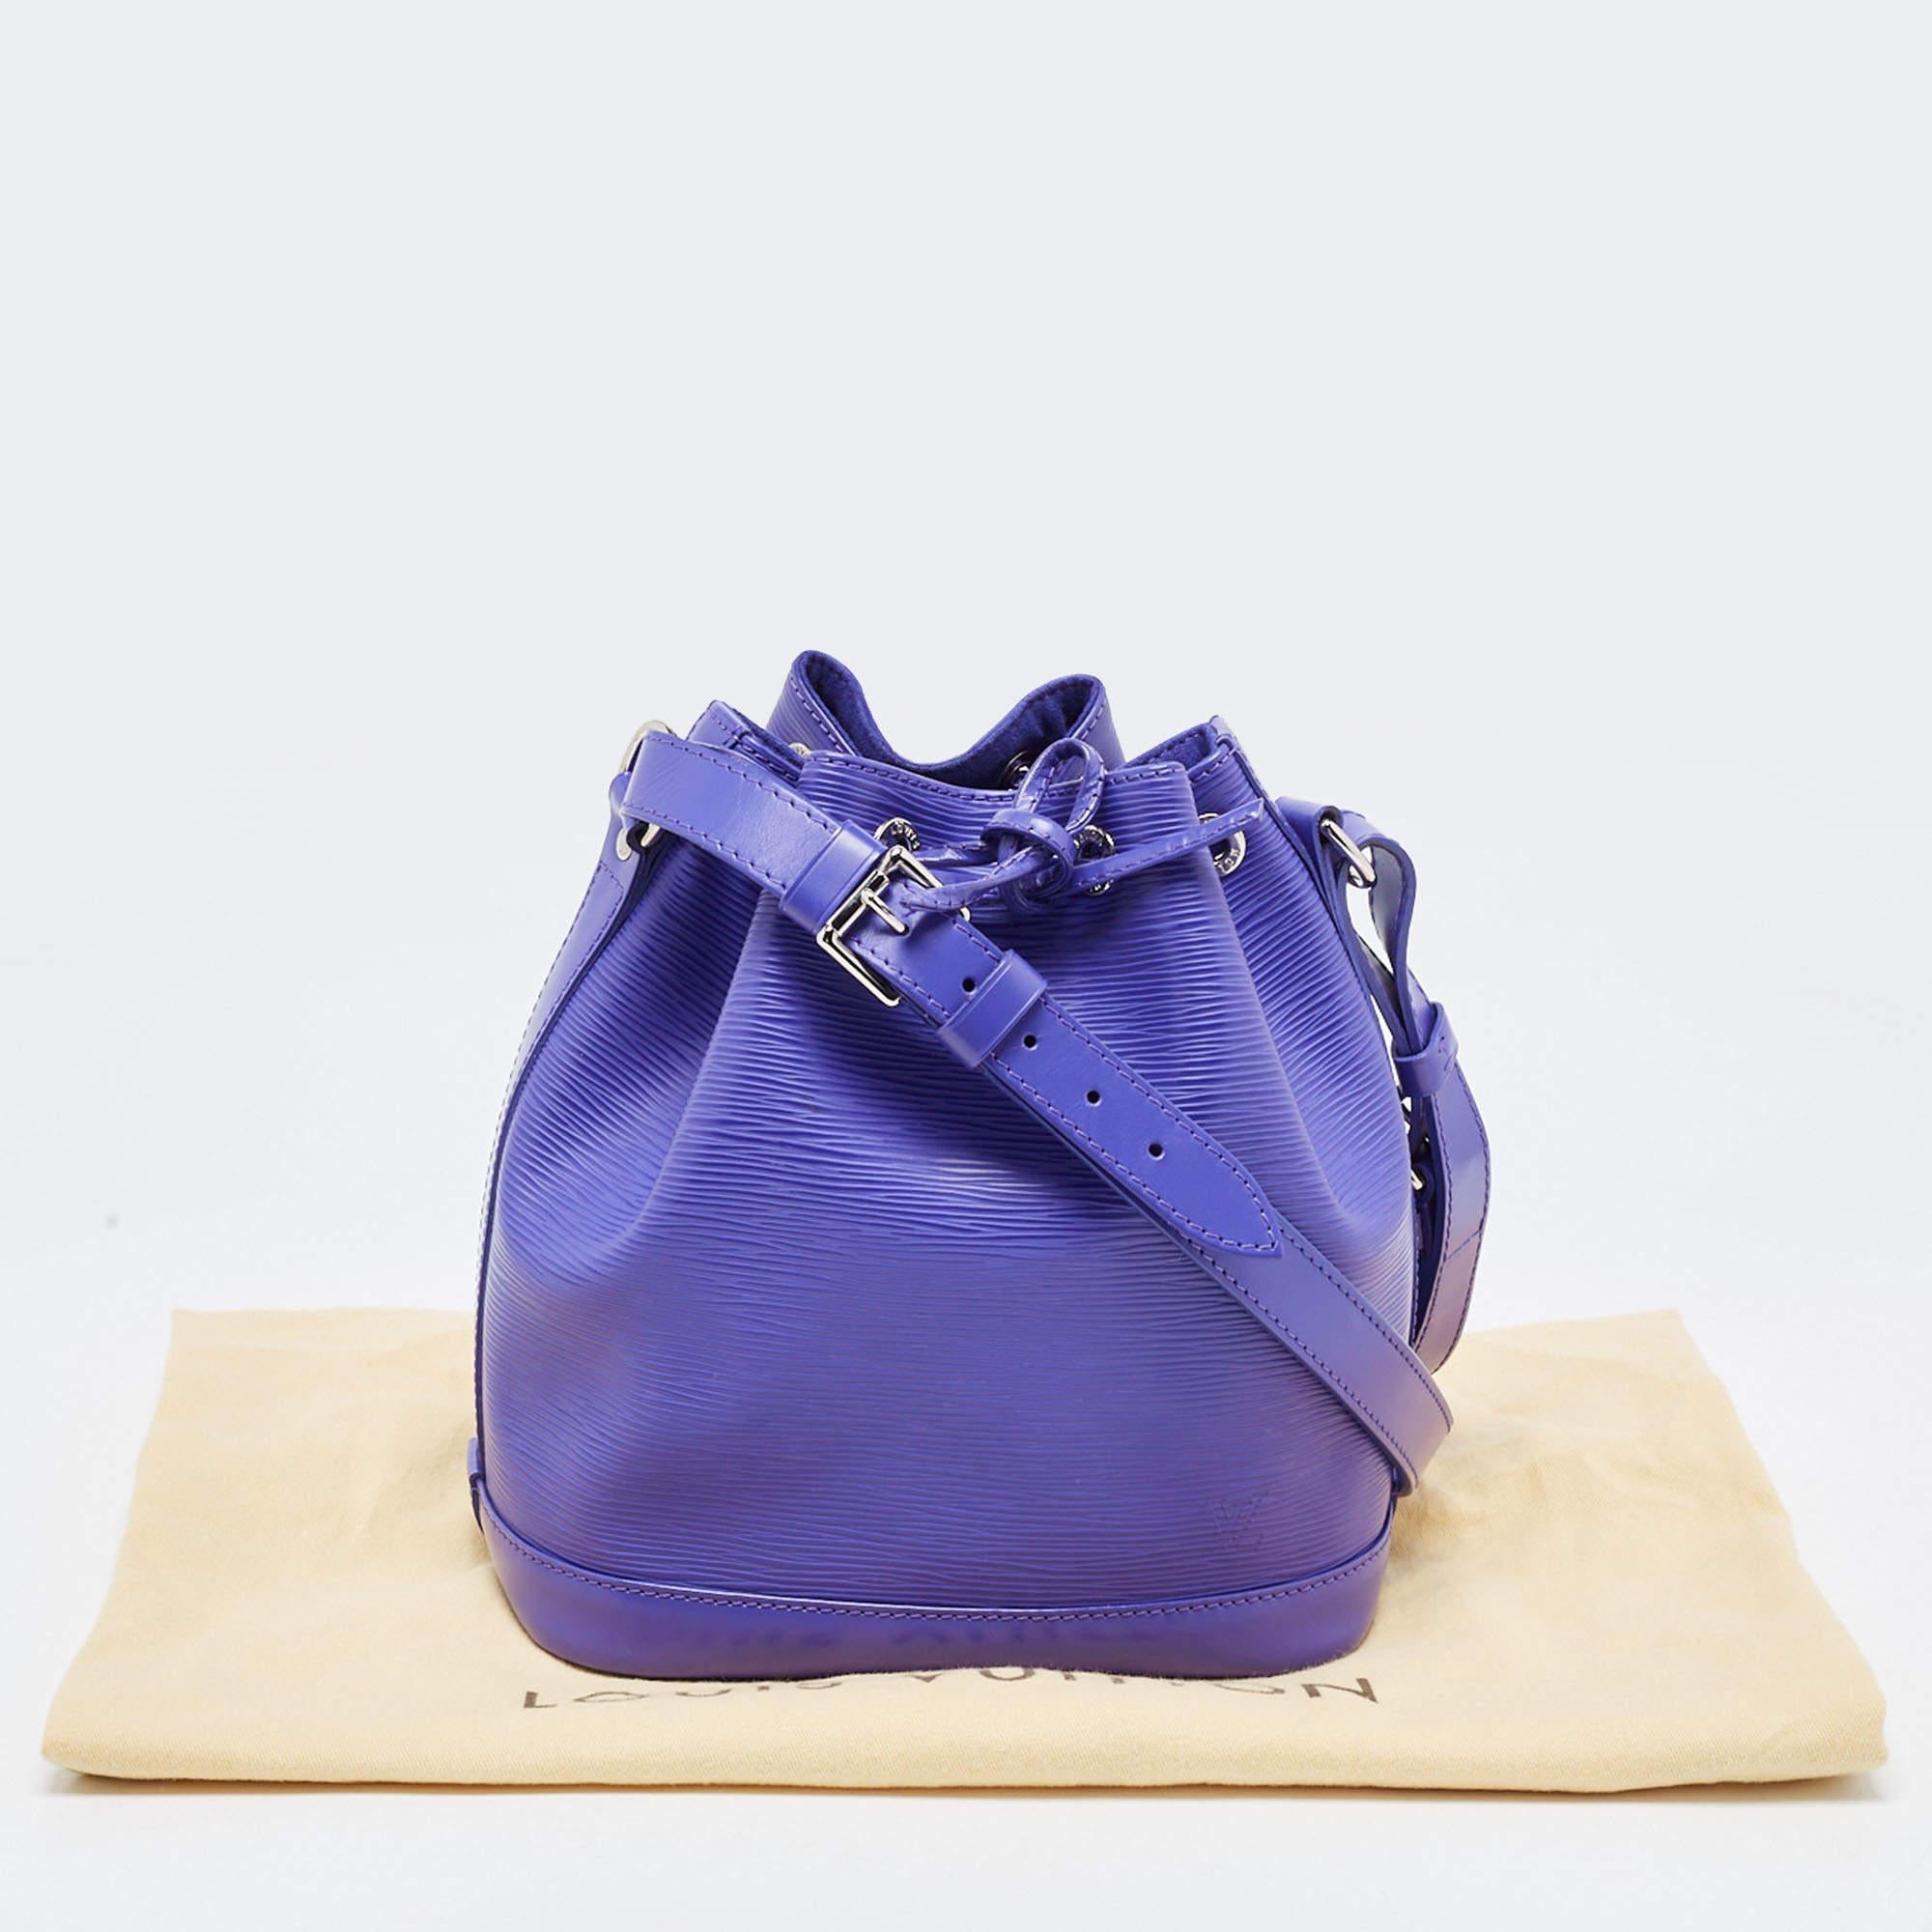 Louis Vuitton Figue Epi Leather Neonoe Bag For Sale 11